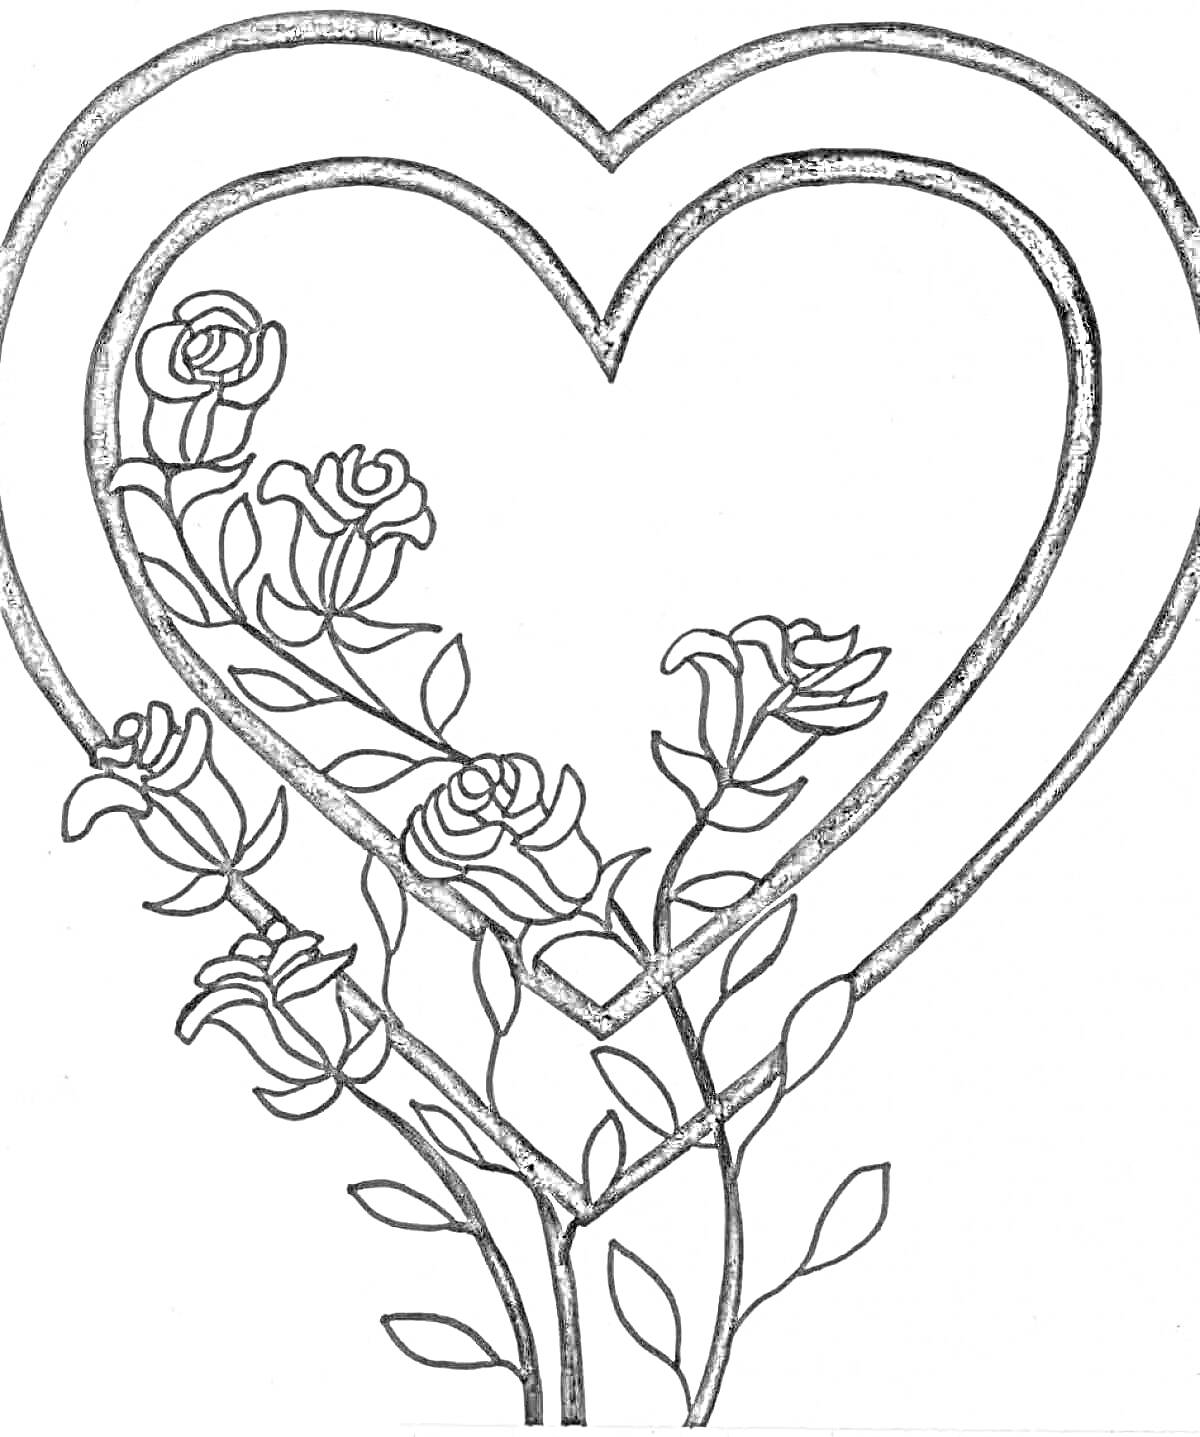 Раскраска Два сердечка, обрамленные розами